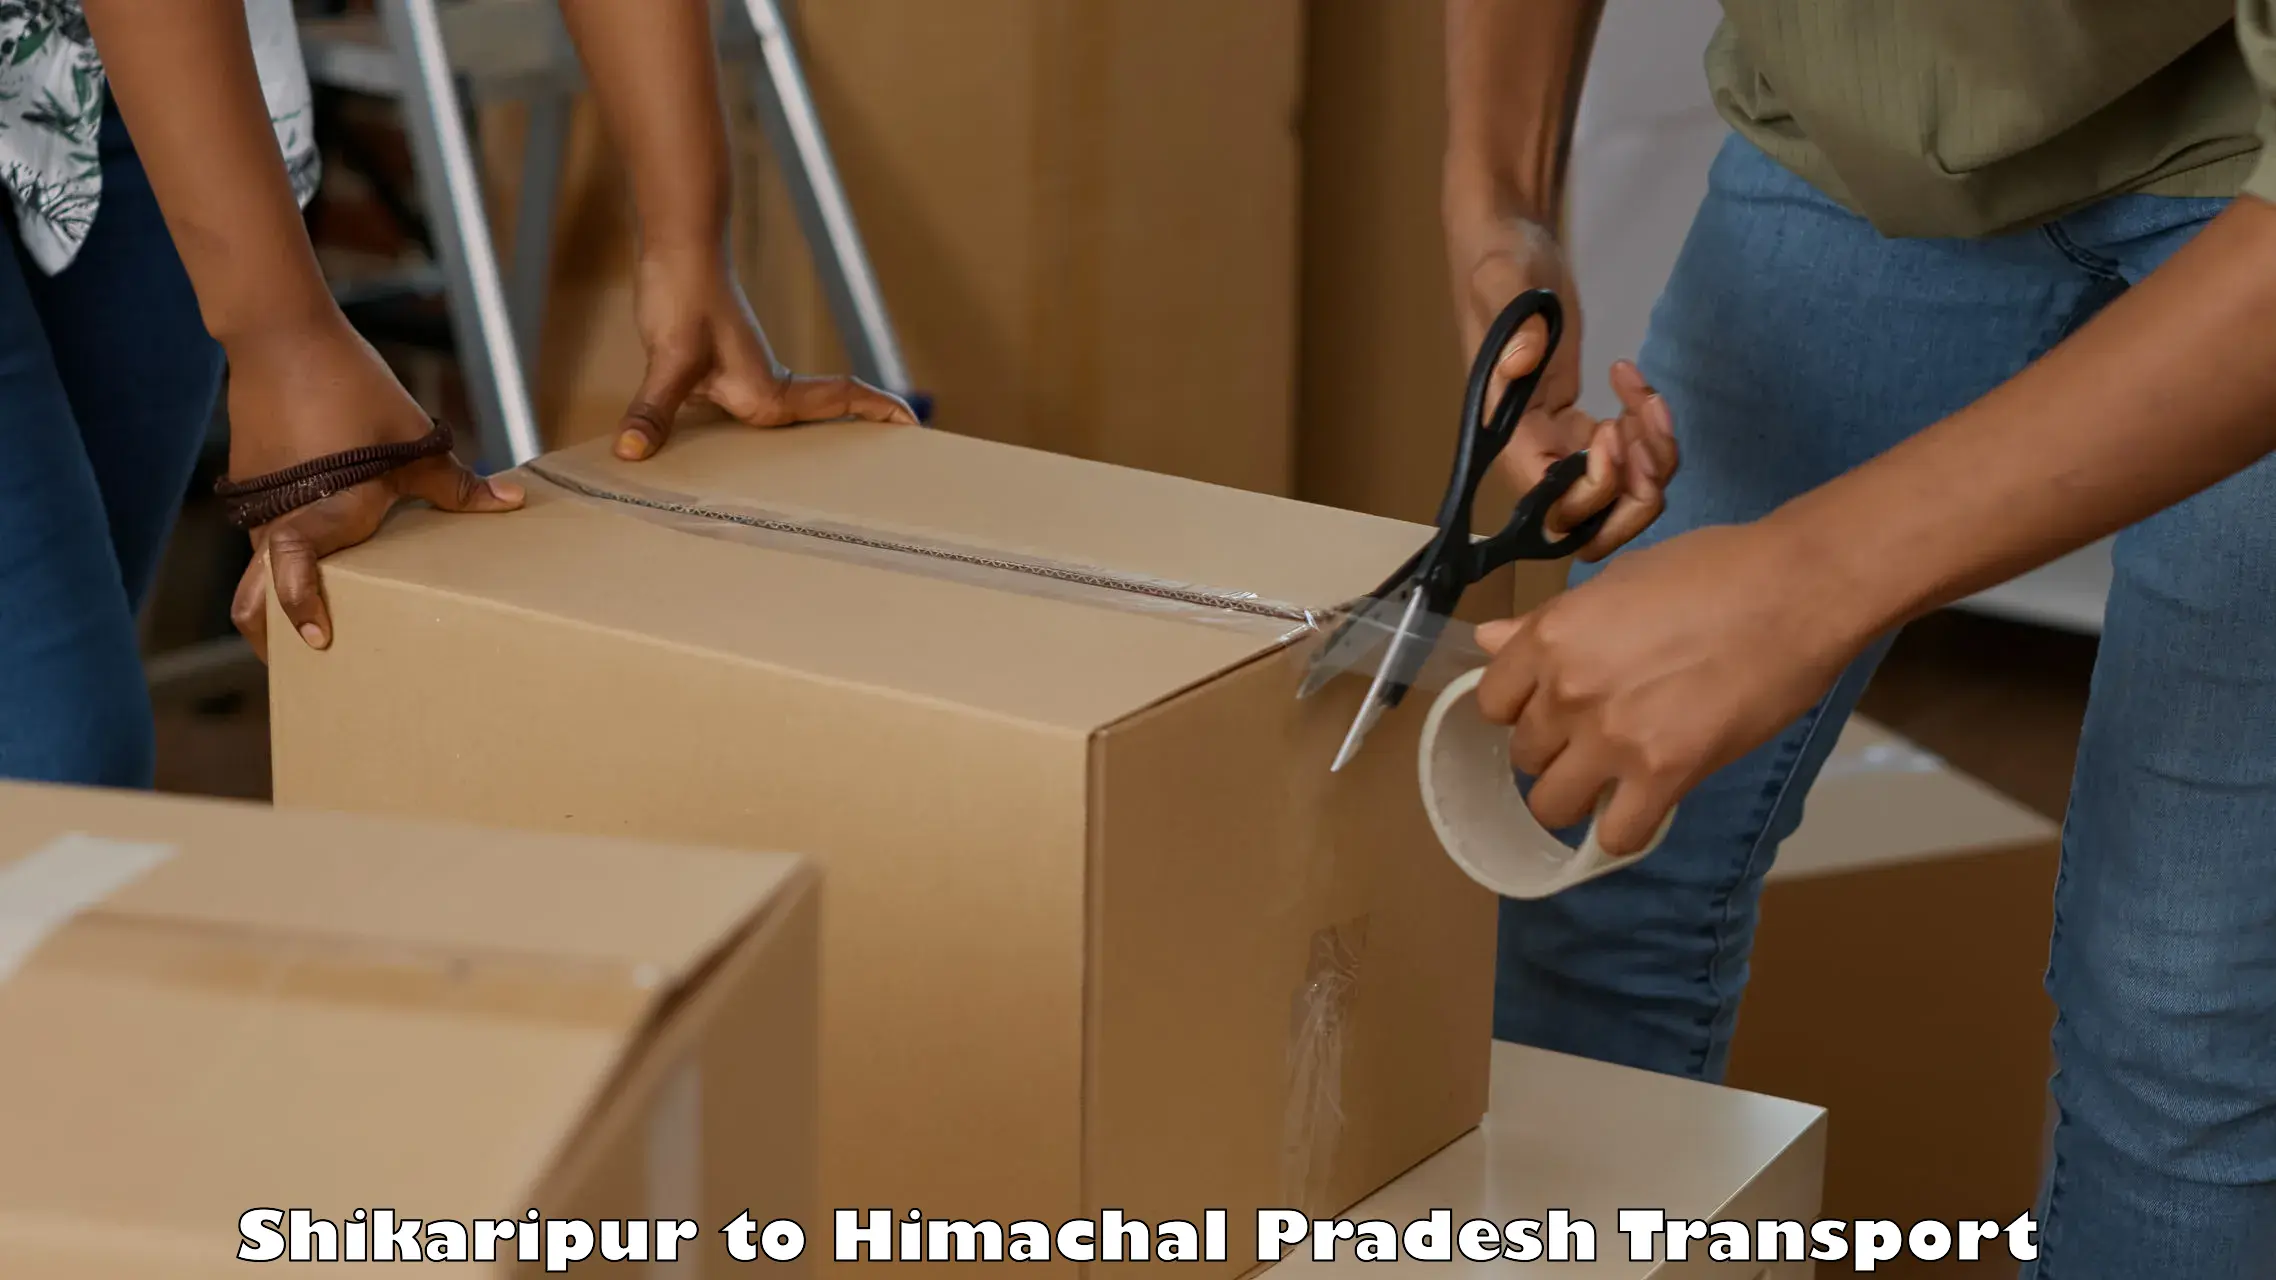 Commercial transport service Shikaripur to Dharamshala